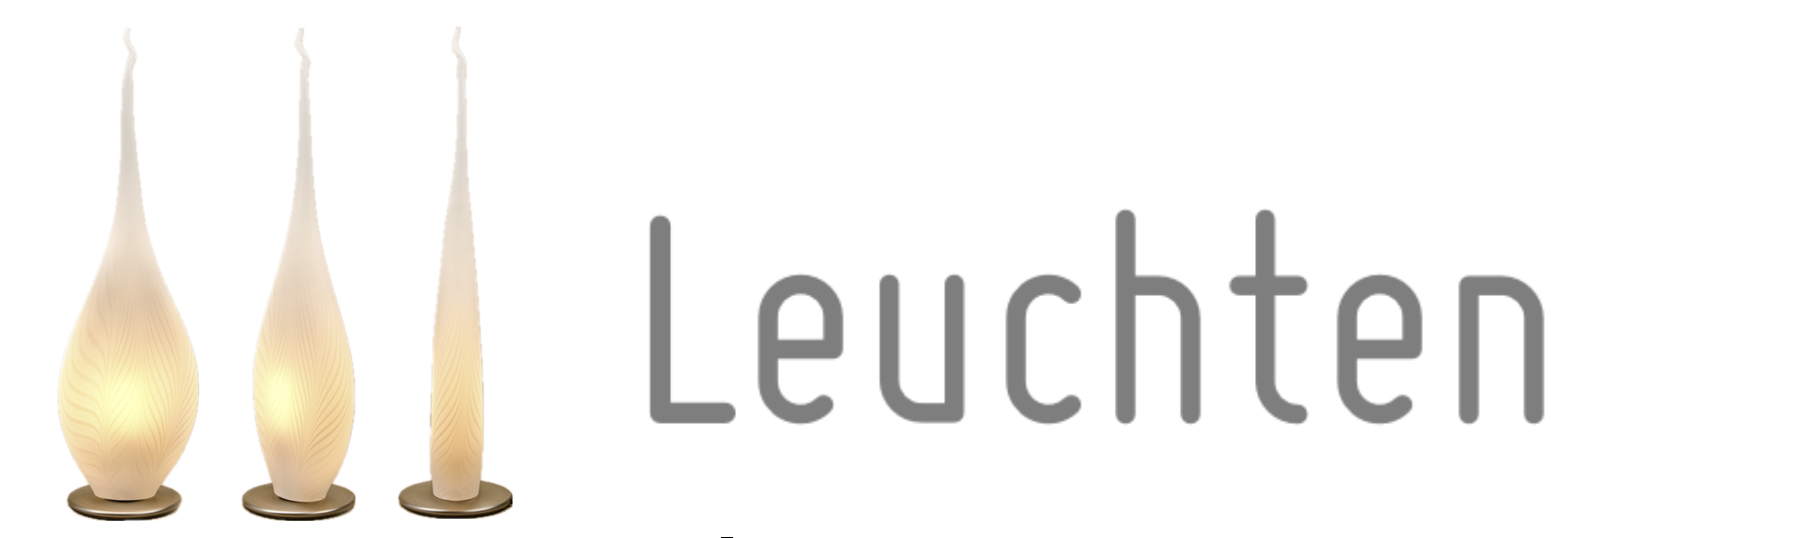 FreyStil-Leuchten-Tischlampe-Handwerk-Bayern-mundgeblasen